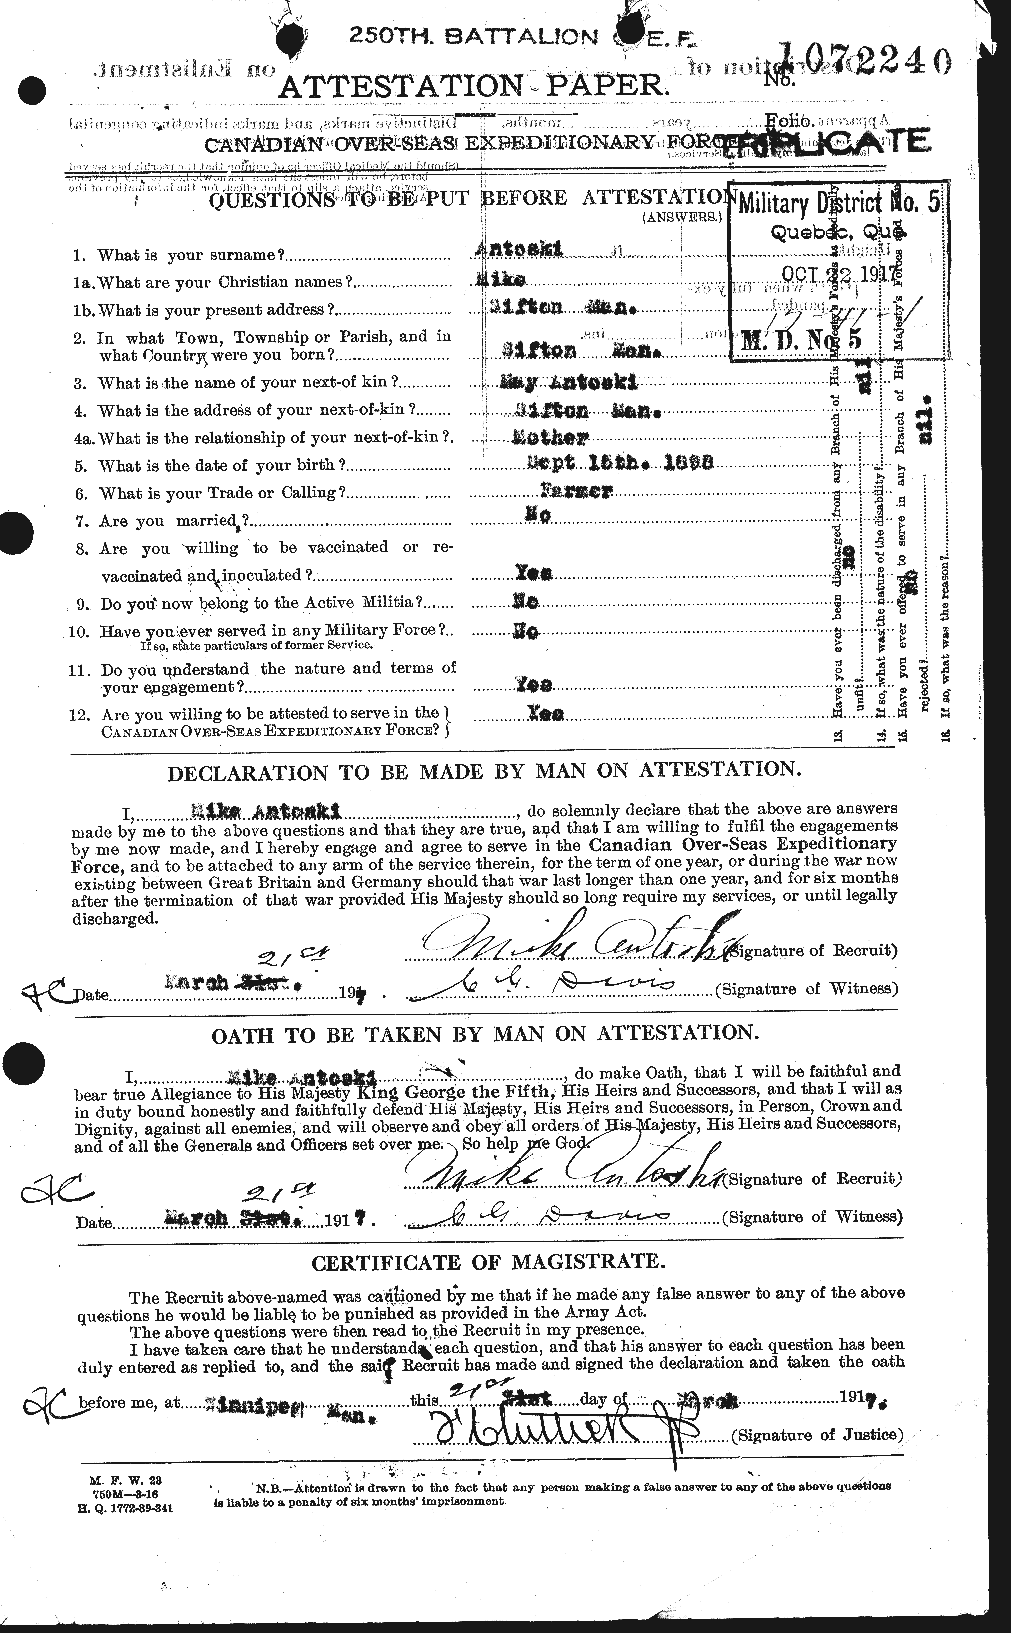 Dossiers du Personnel de la Première Guerre mondiale - CEC 212094a